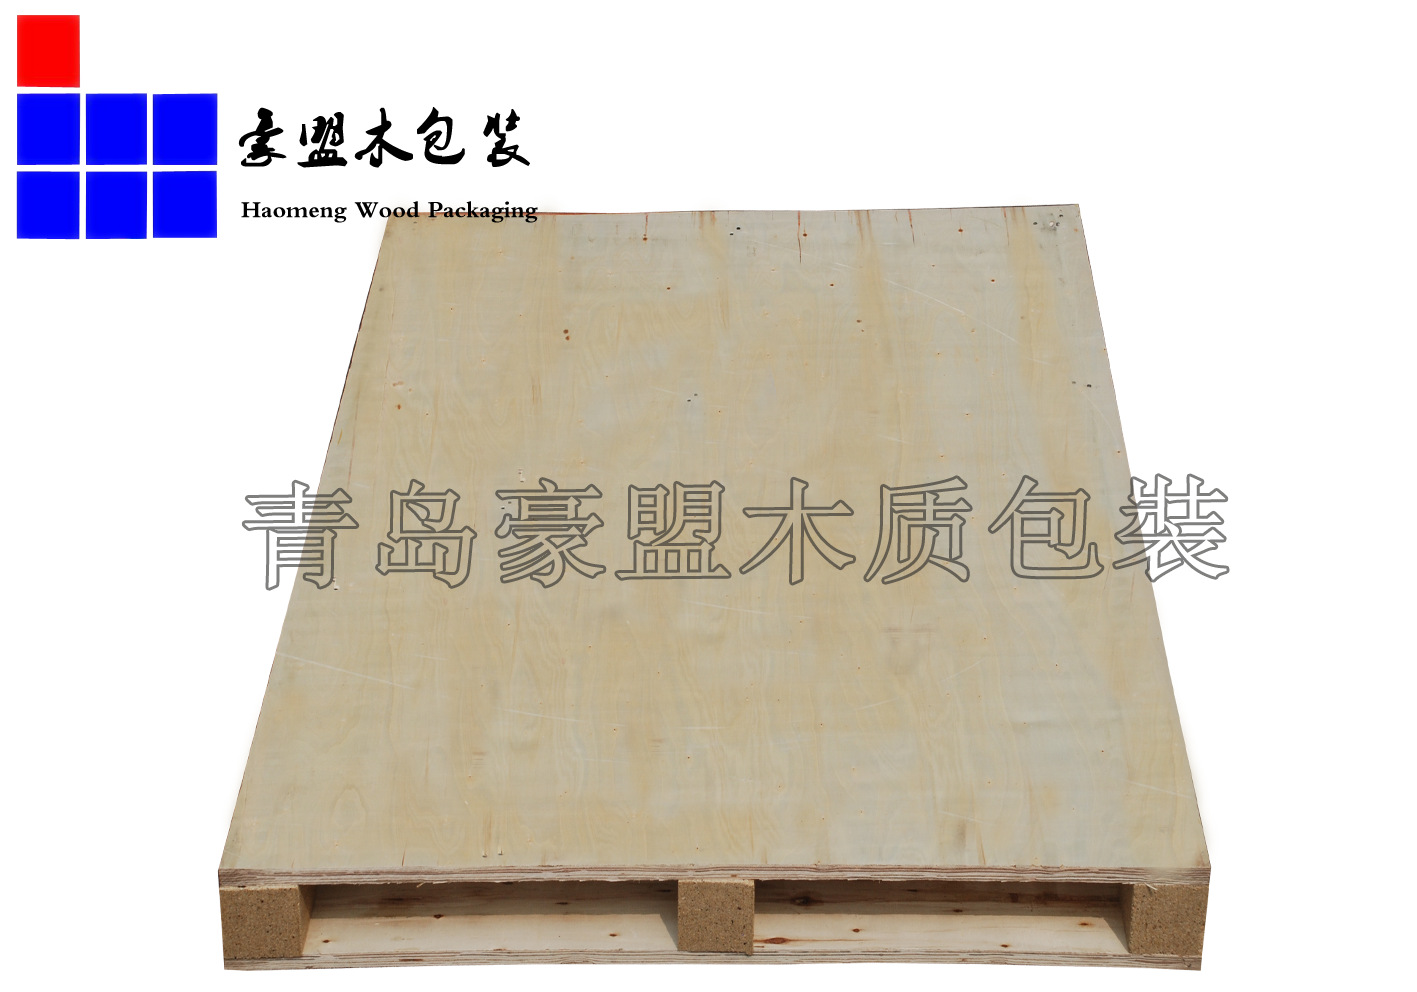 木质托盘胶合板定做加工厂出售黄岛保税港区示例图7